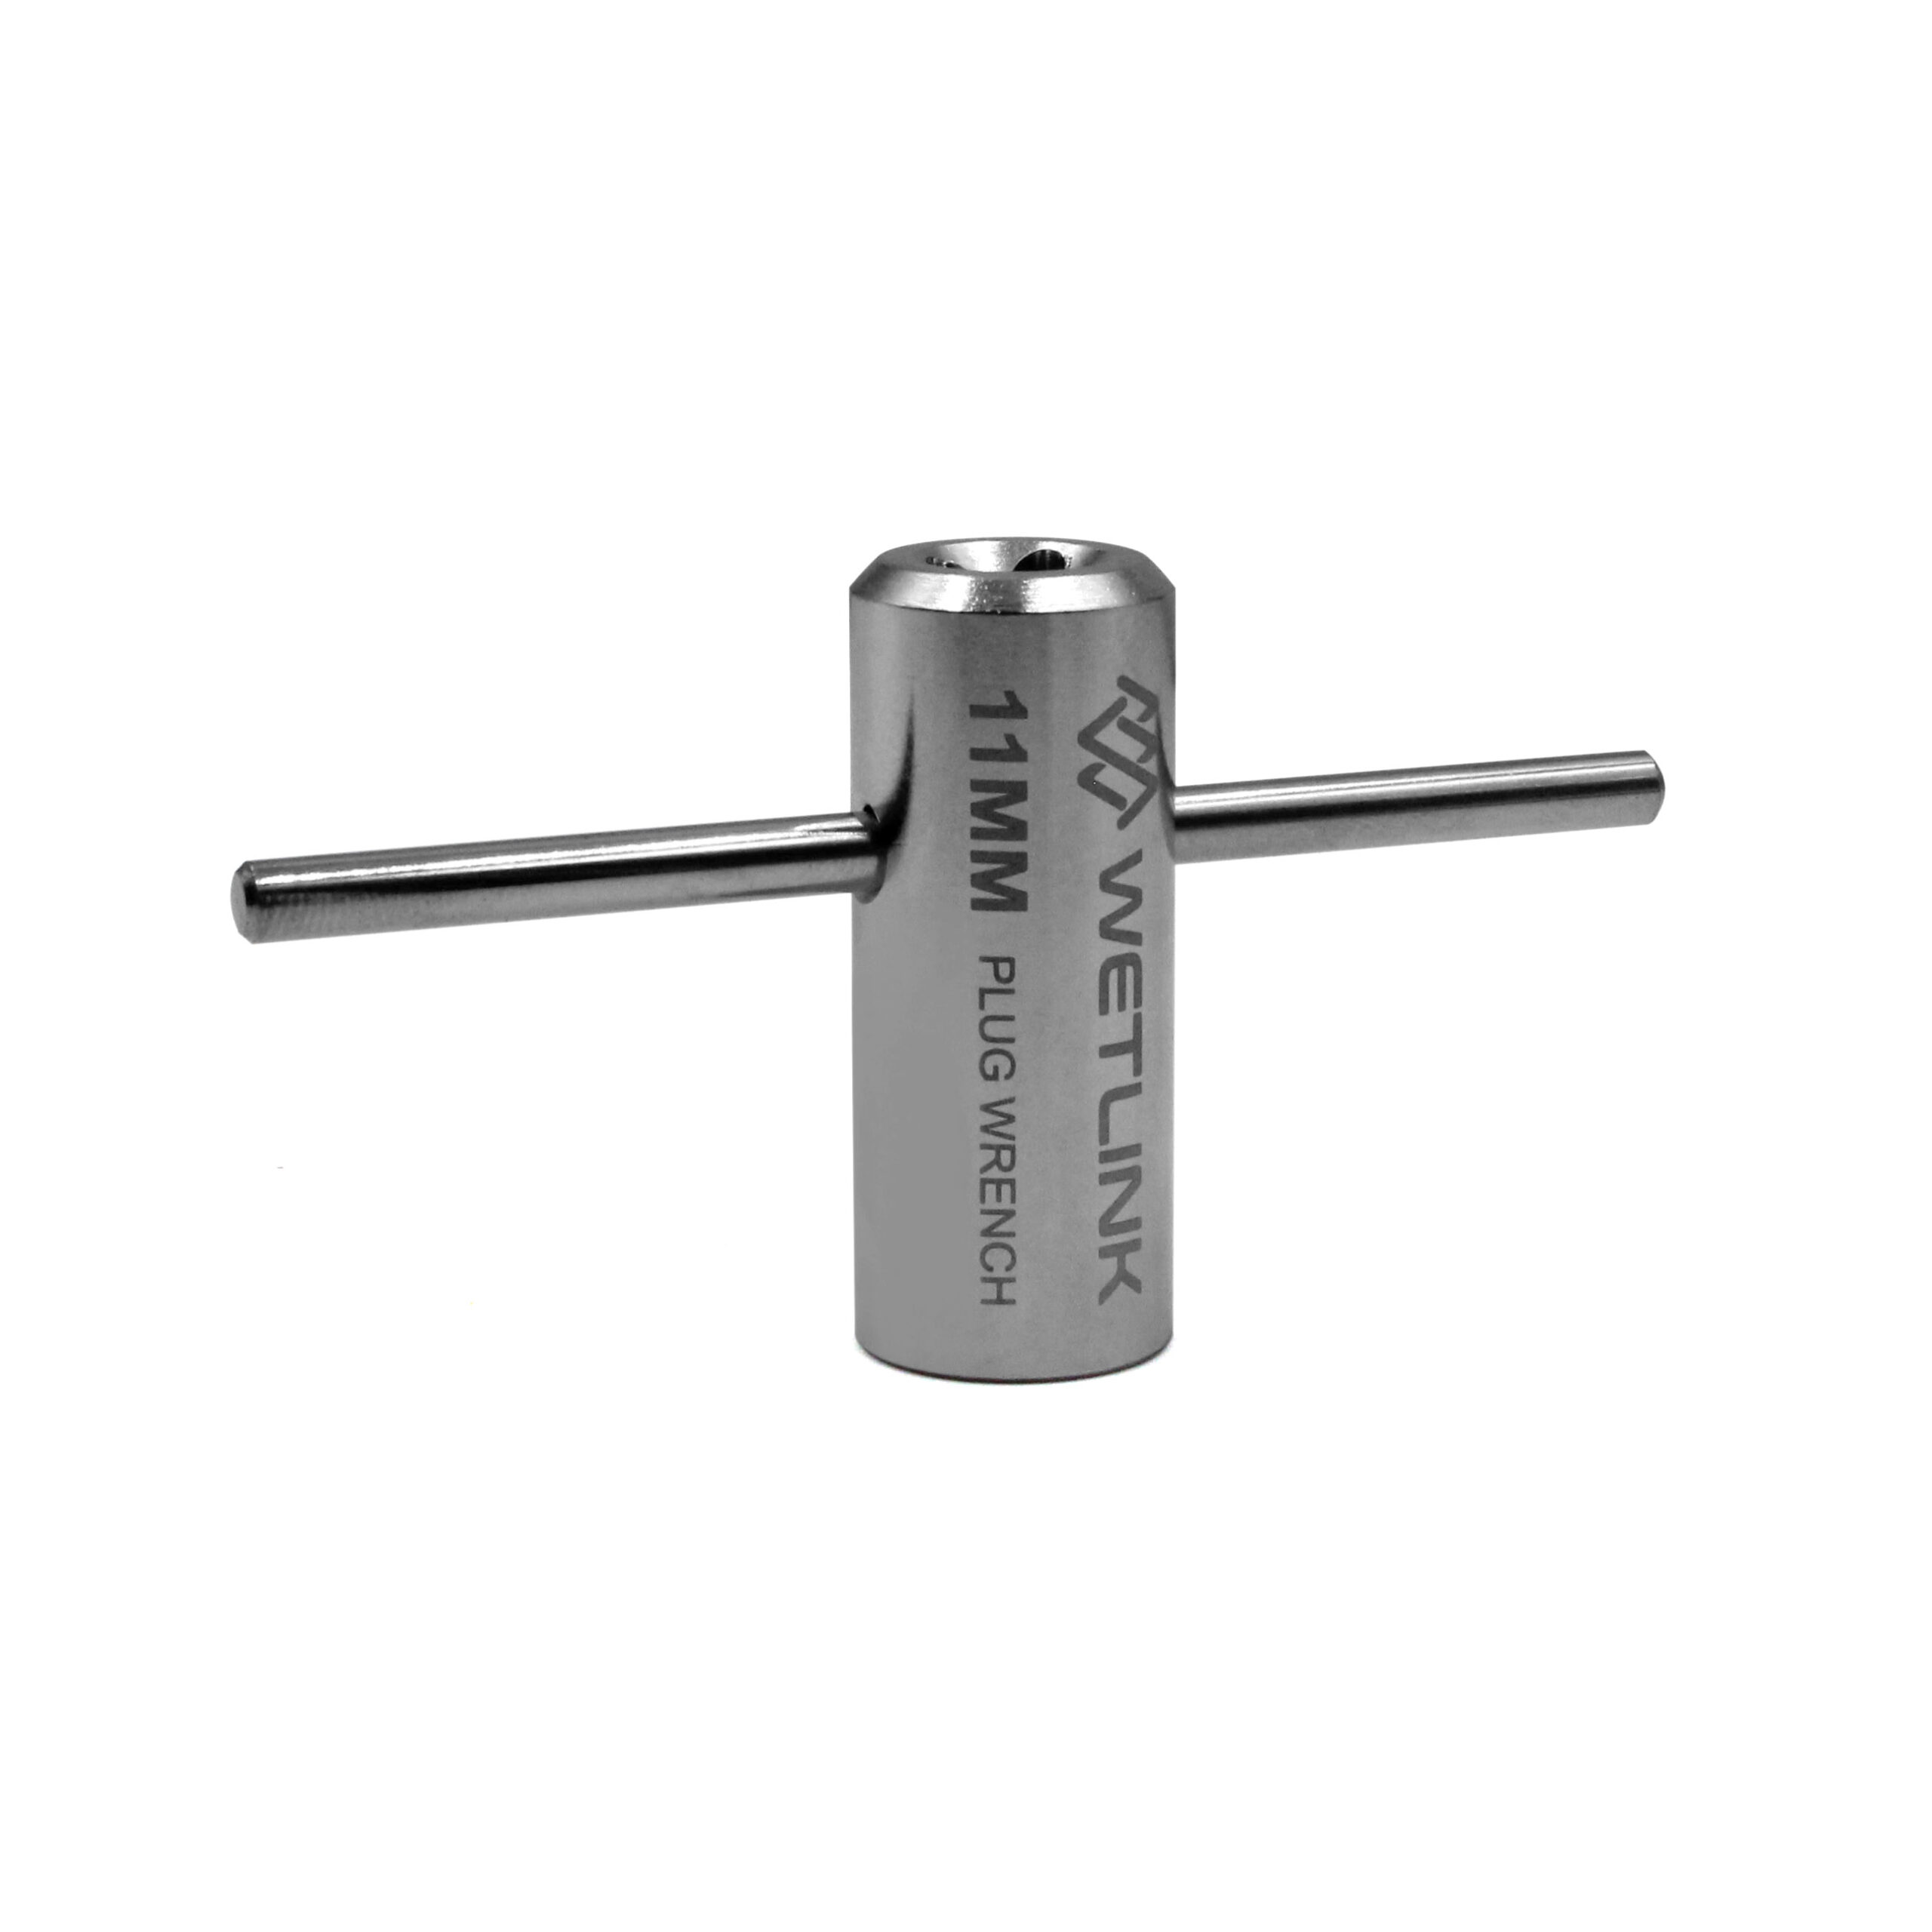 WetLink Penetrator Plug Wrench 11mm